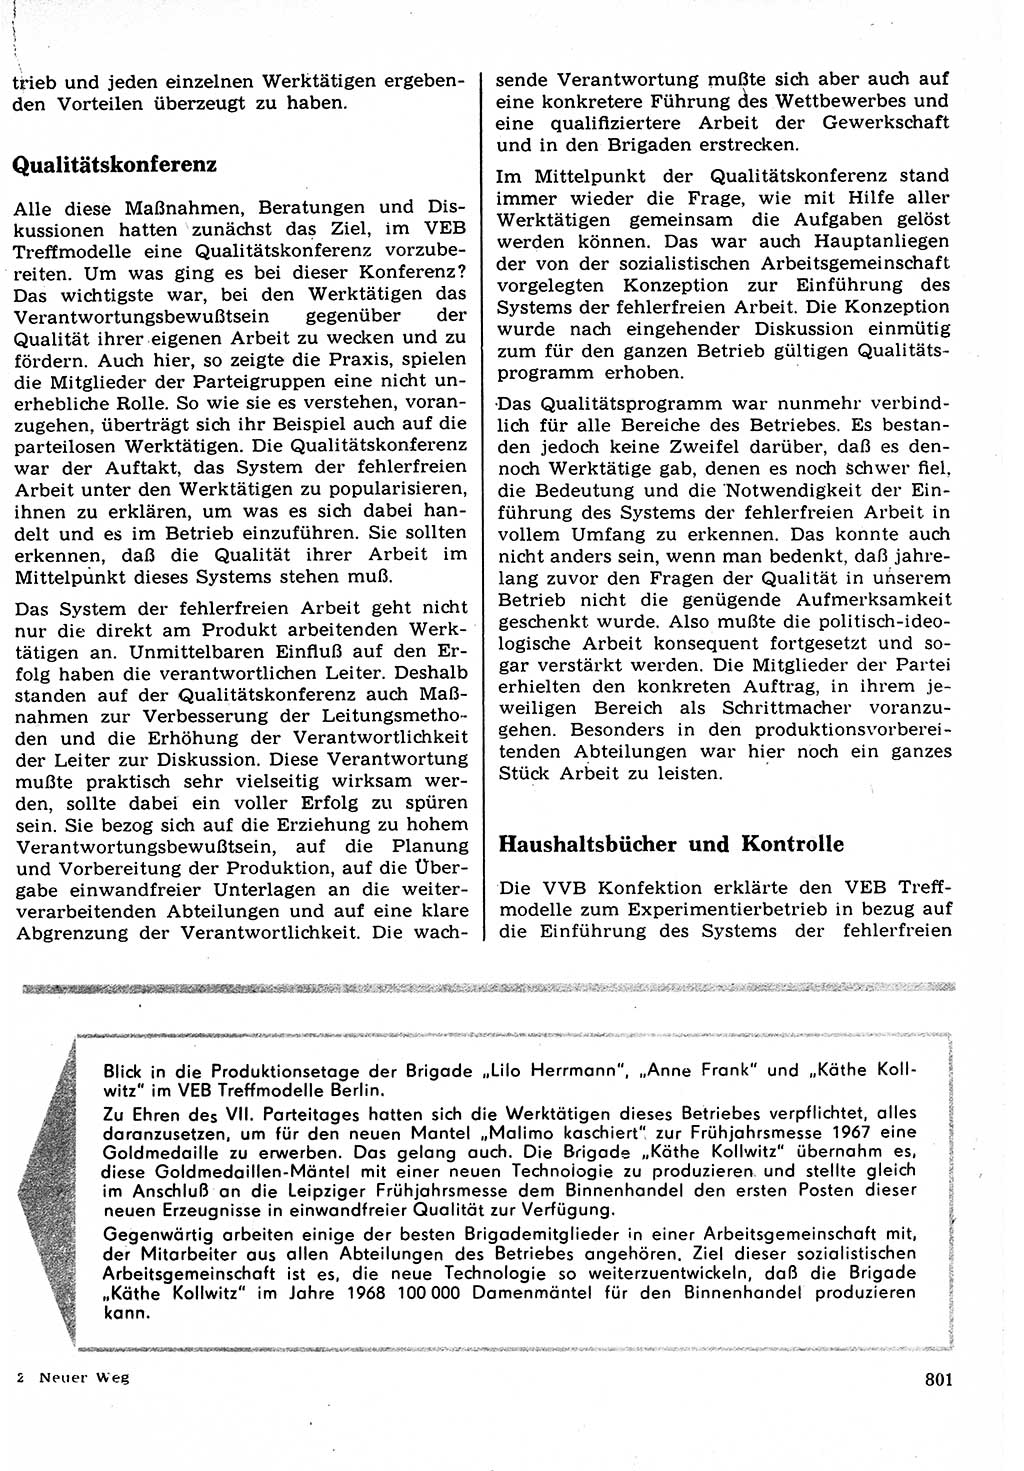 Neuer Weg (NW), Organ des Zentralkomitees (ZK) der SED (Sozialistische Einheitspartei Deutschlands) für Fragen des Parteilebens, 22. Jahrgang [Deutsche Demokratische Republik (DDR)] 1967, Seite 801 (NW ZK SED DDR 1967, S. 801)